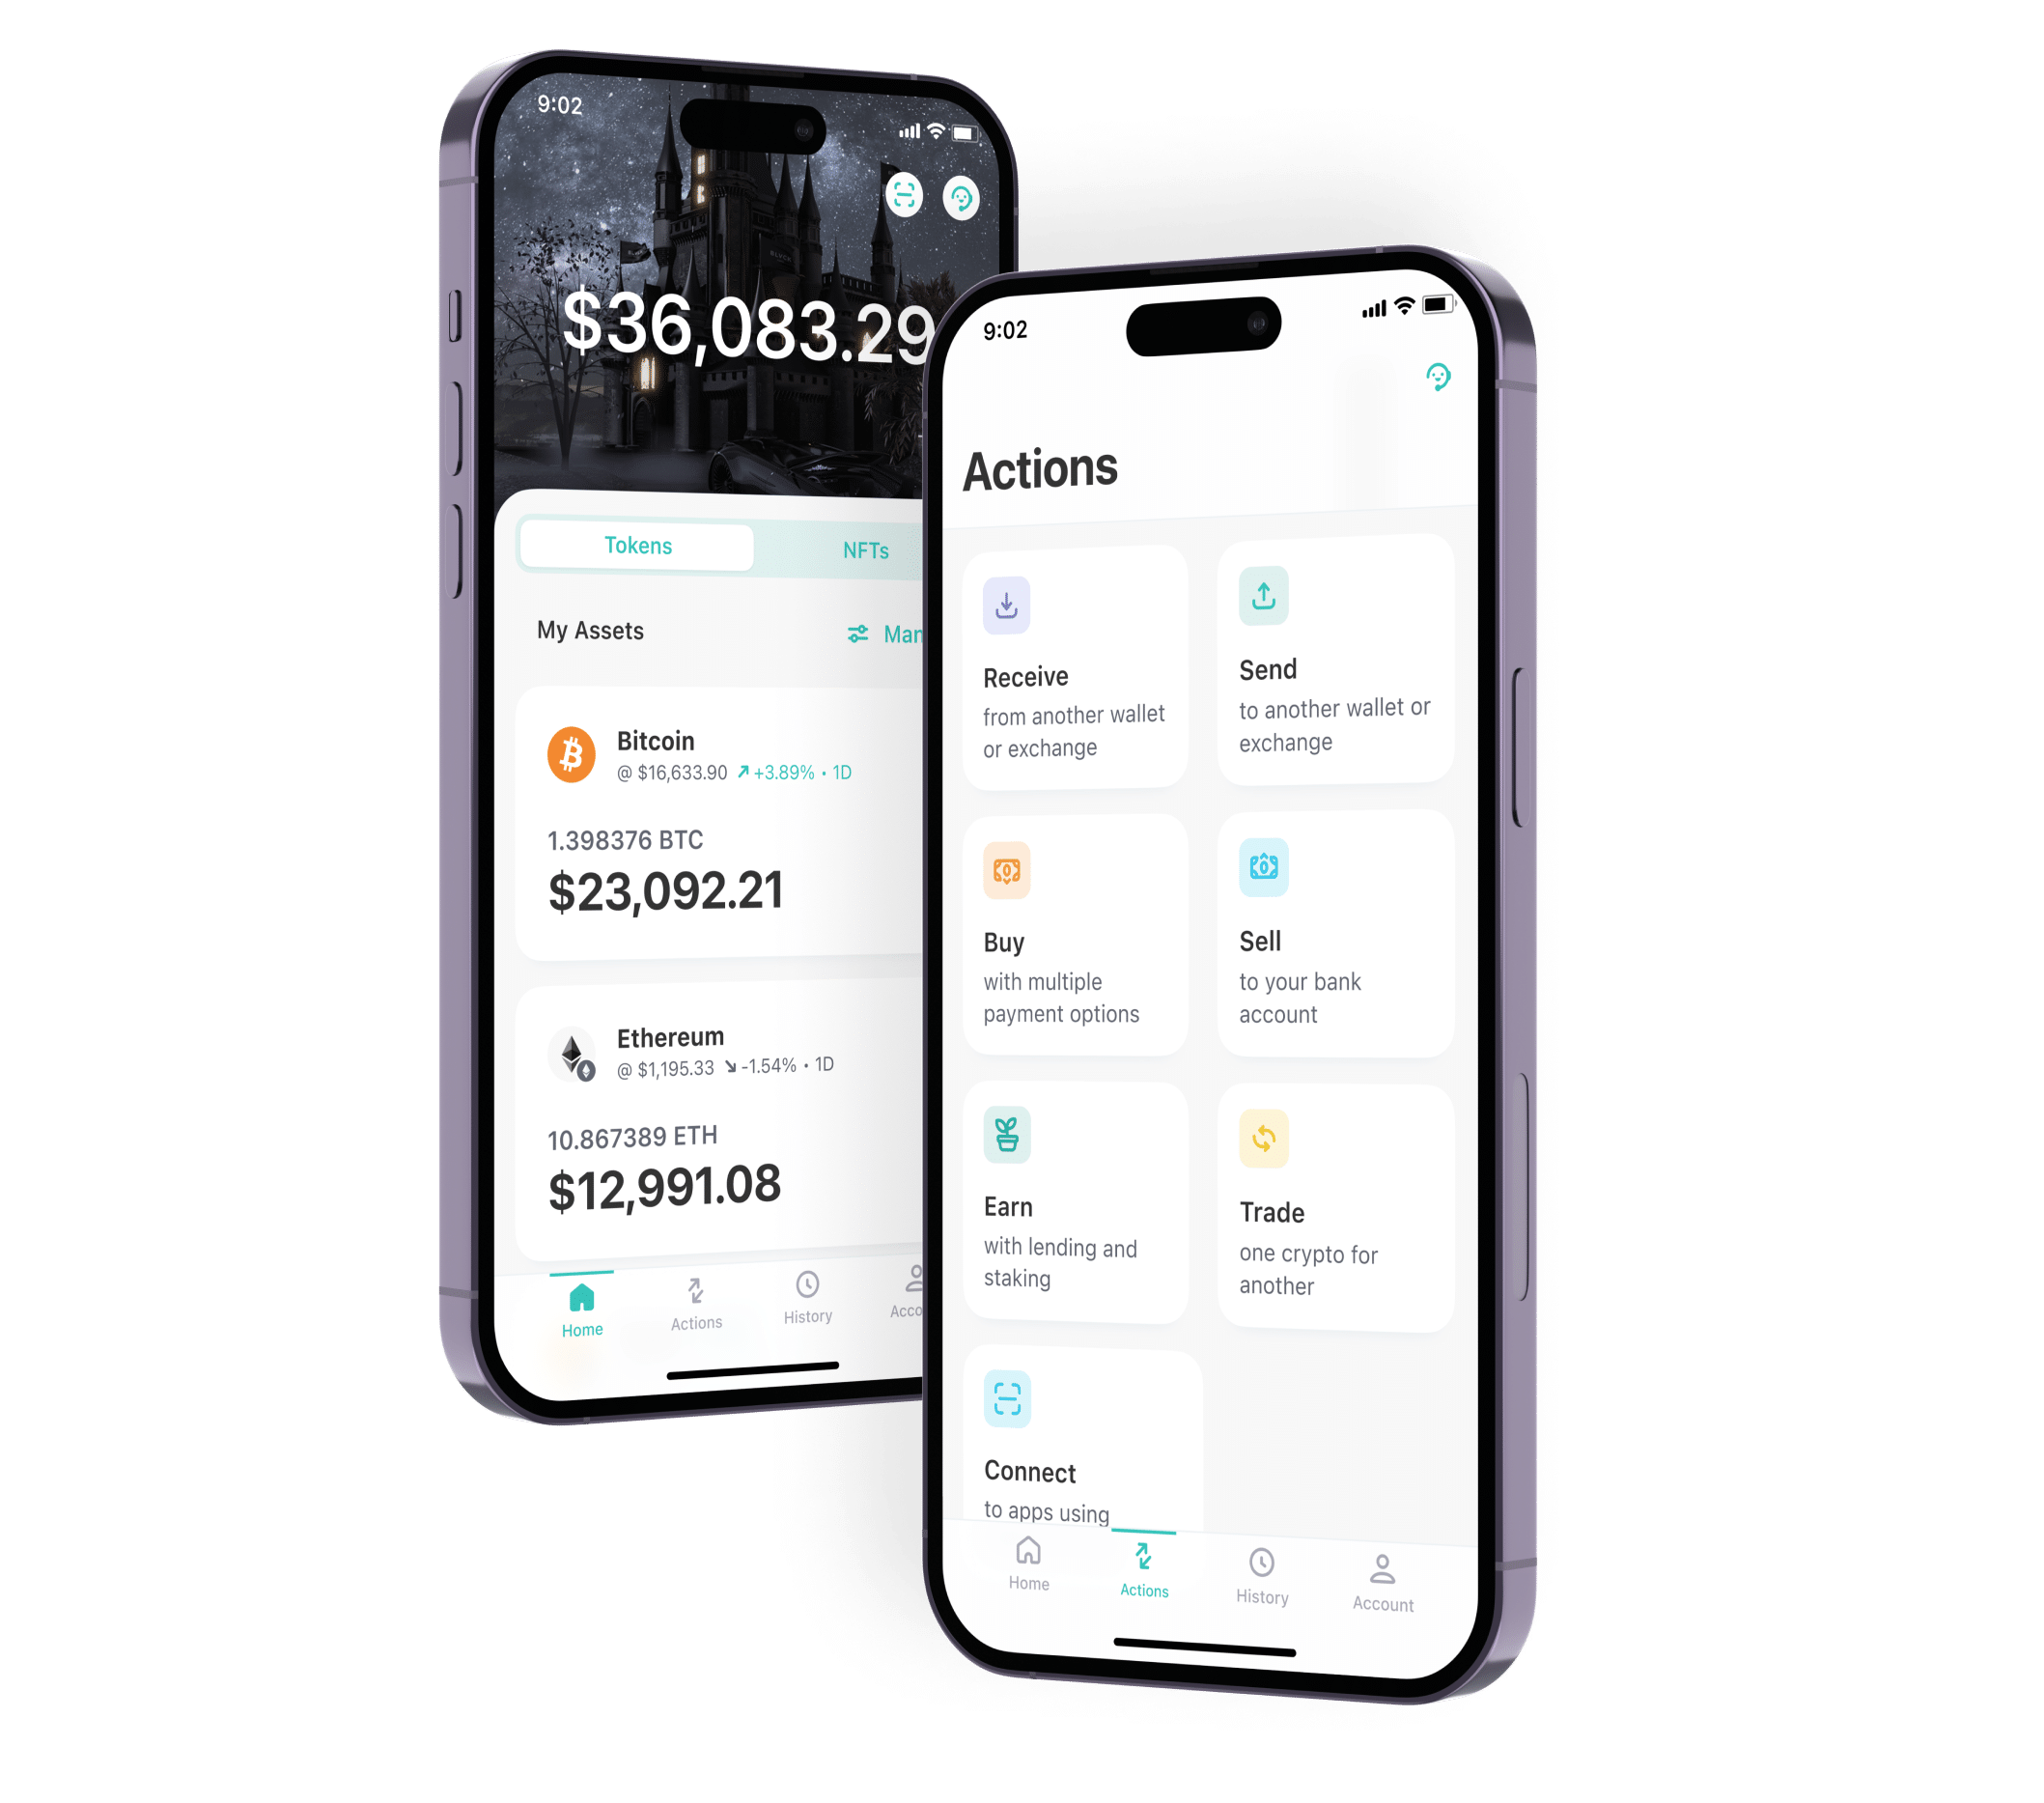 Coinbase mobile wallet app interface